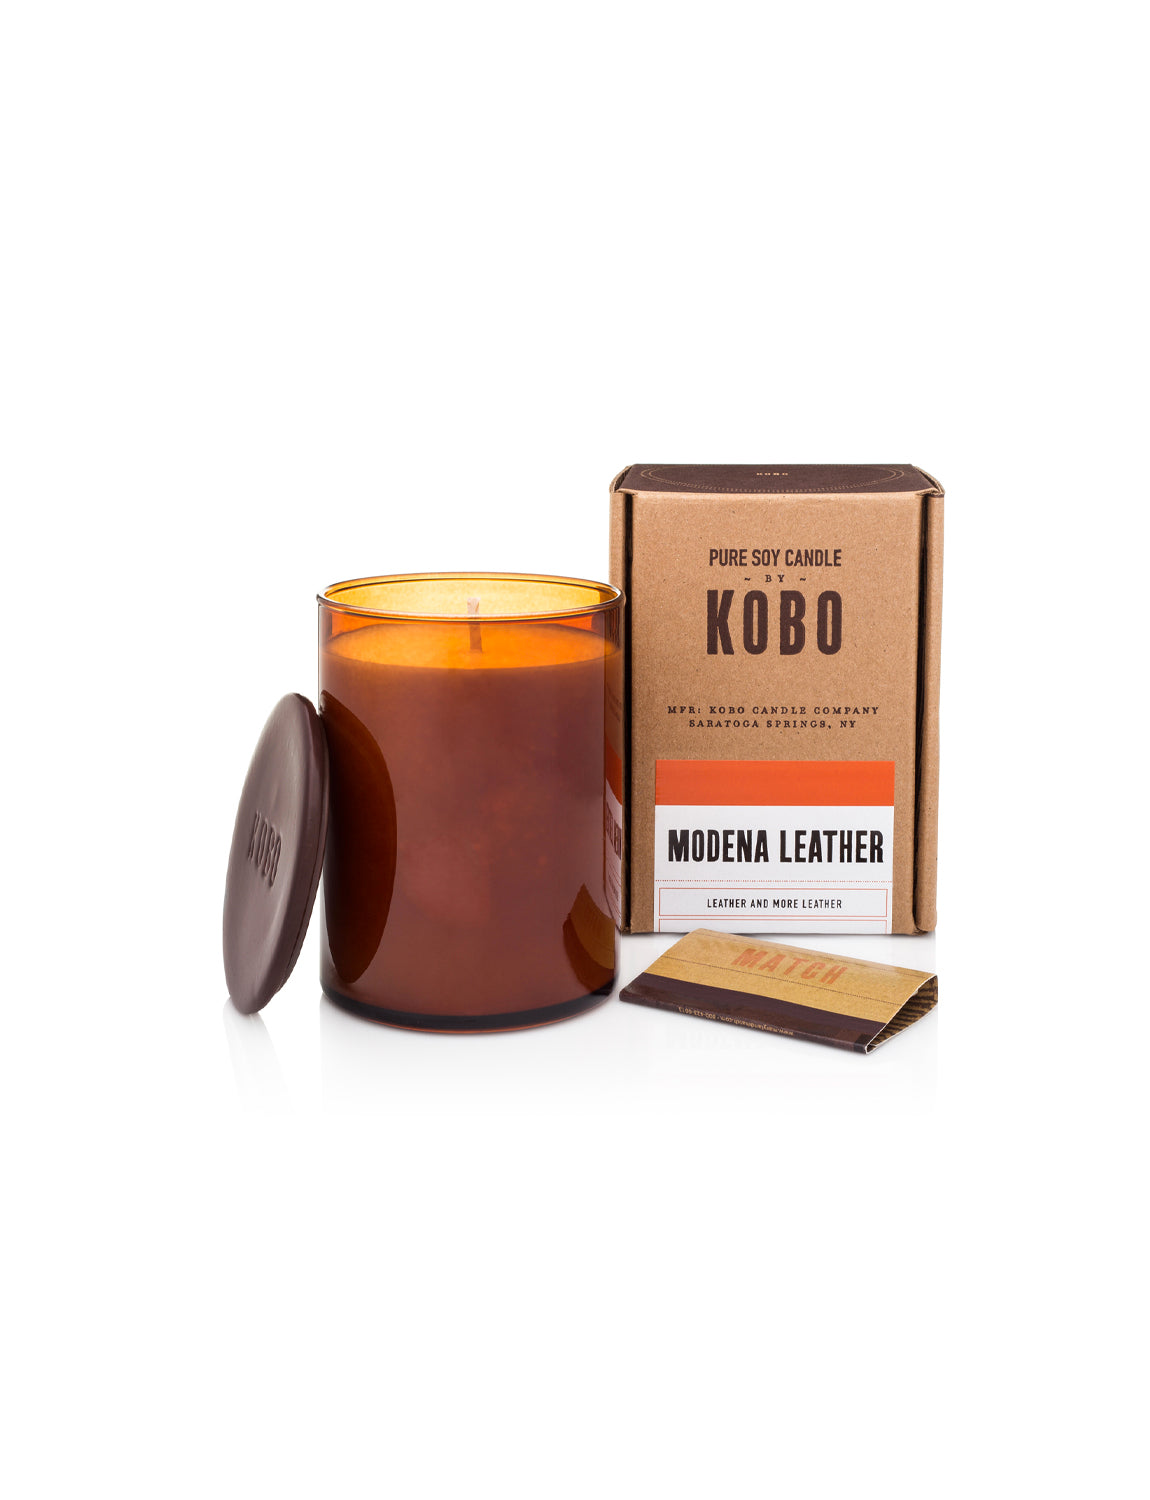 Kobo Candle, Modena Leather